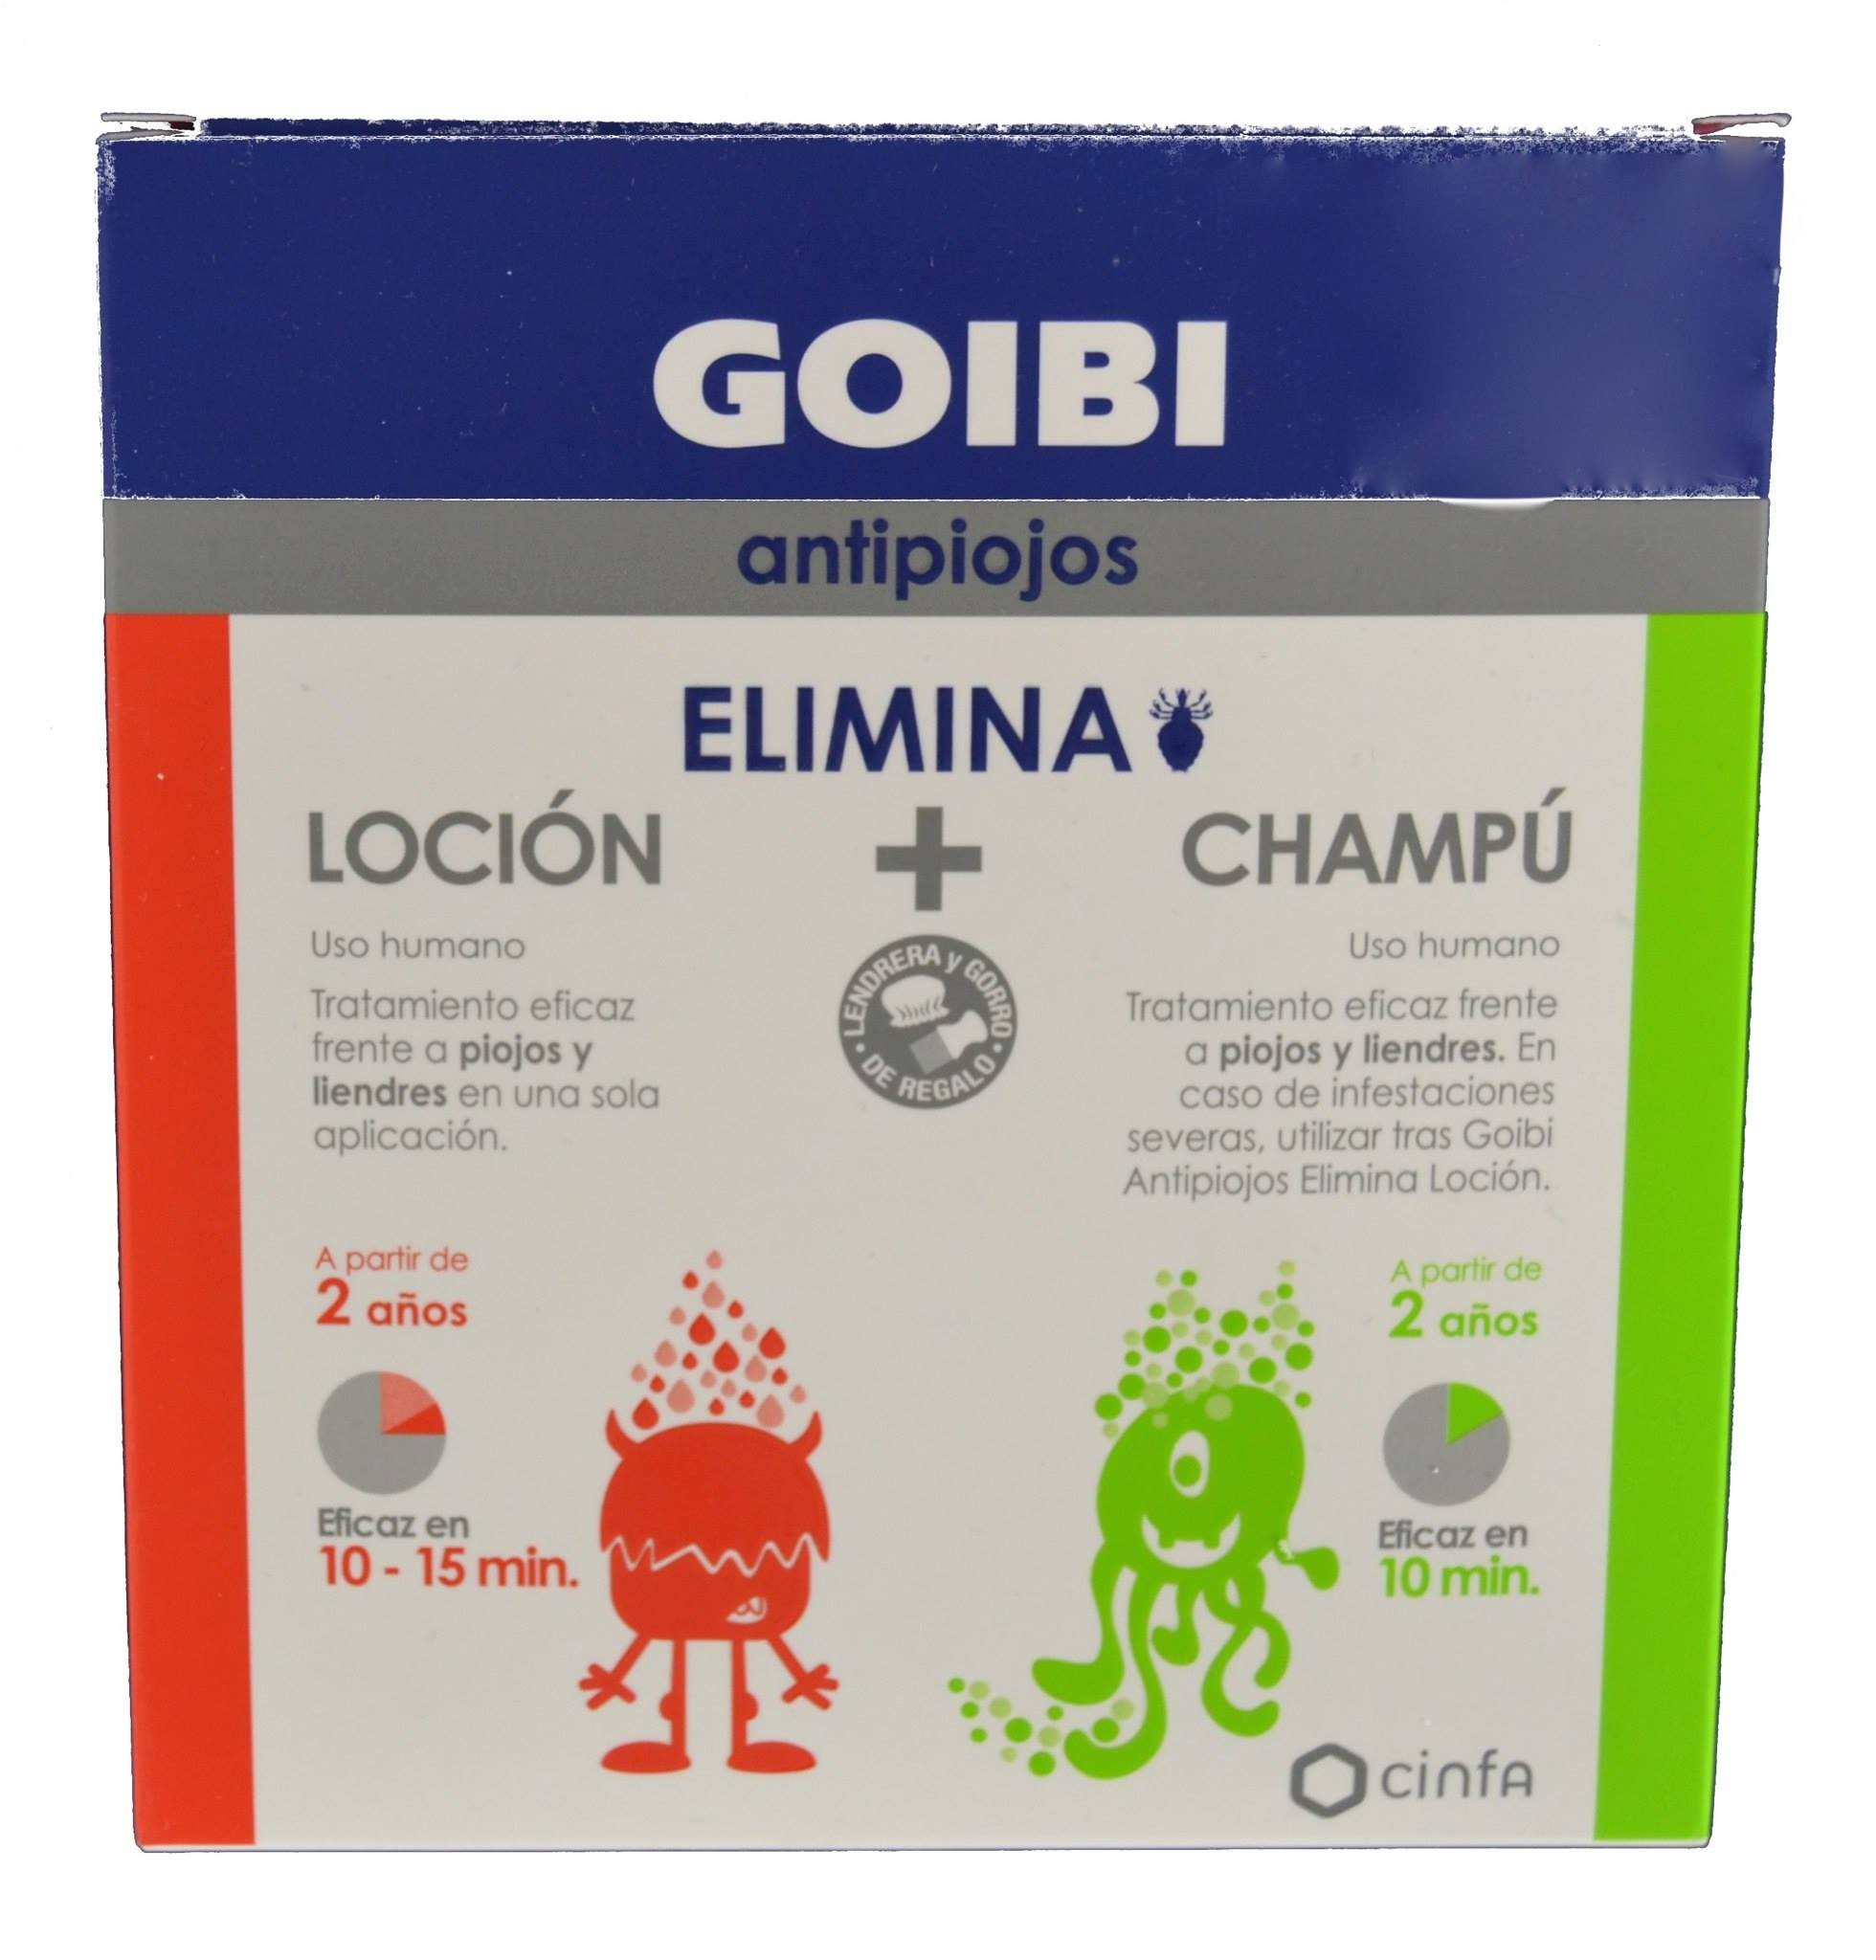 GOIBI ANTIPIOJOS ELIMINA CHAMPU + LOCION + SPRAY de GOIBI Farmacia…